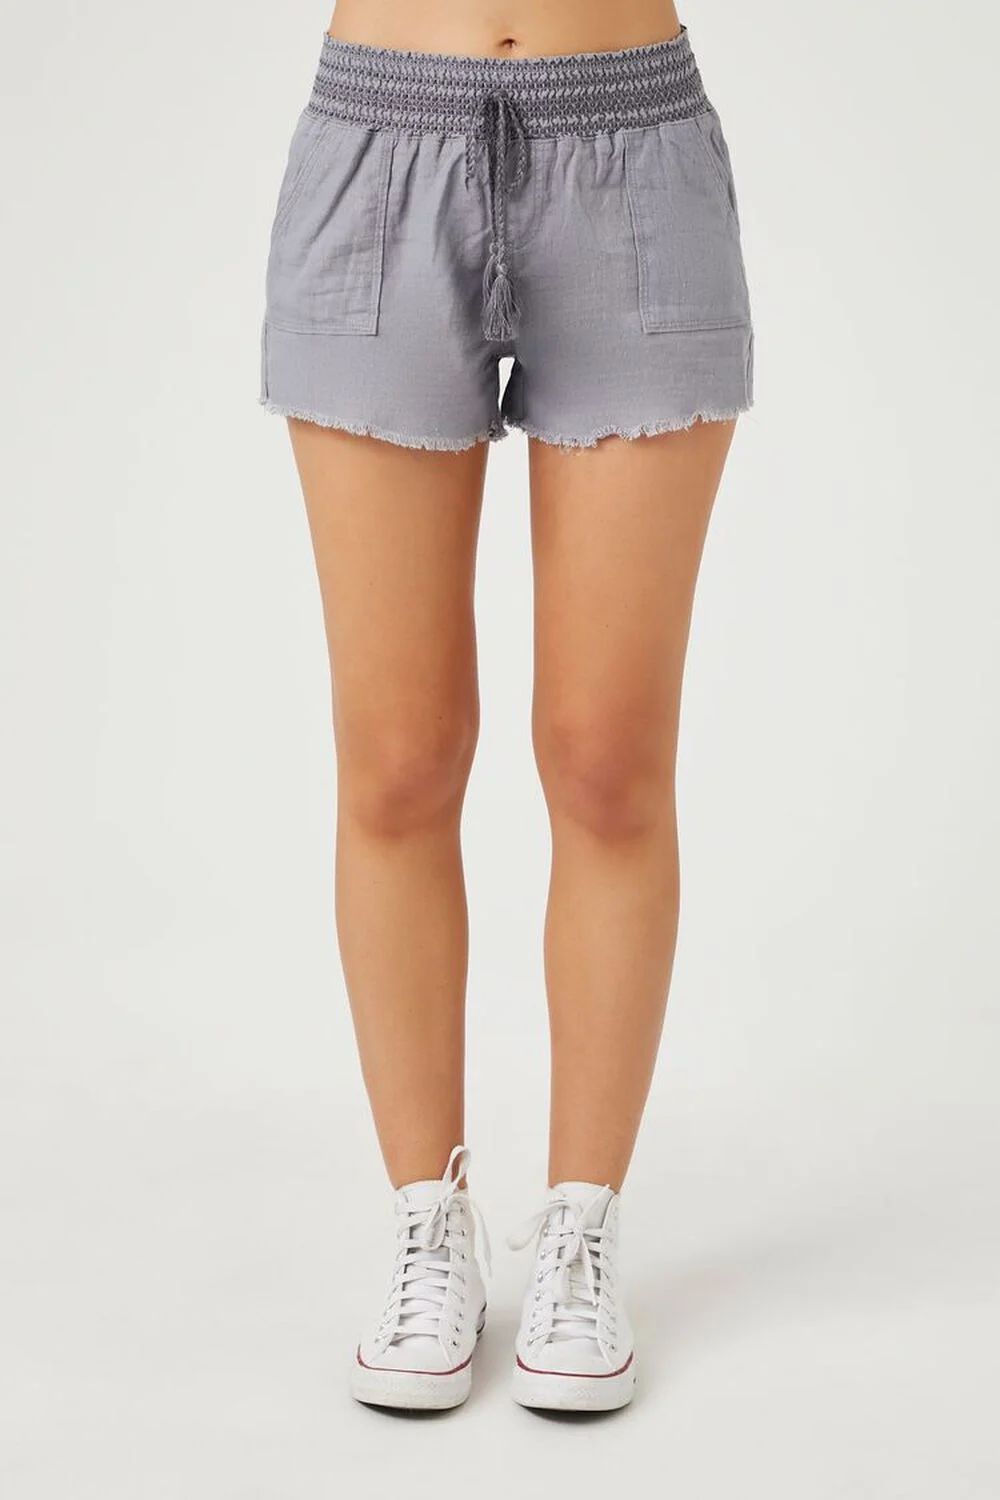 Smocked Tassel Shorts | Forever 21 (US)